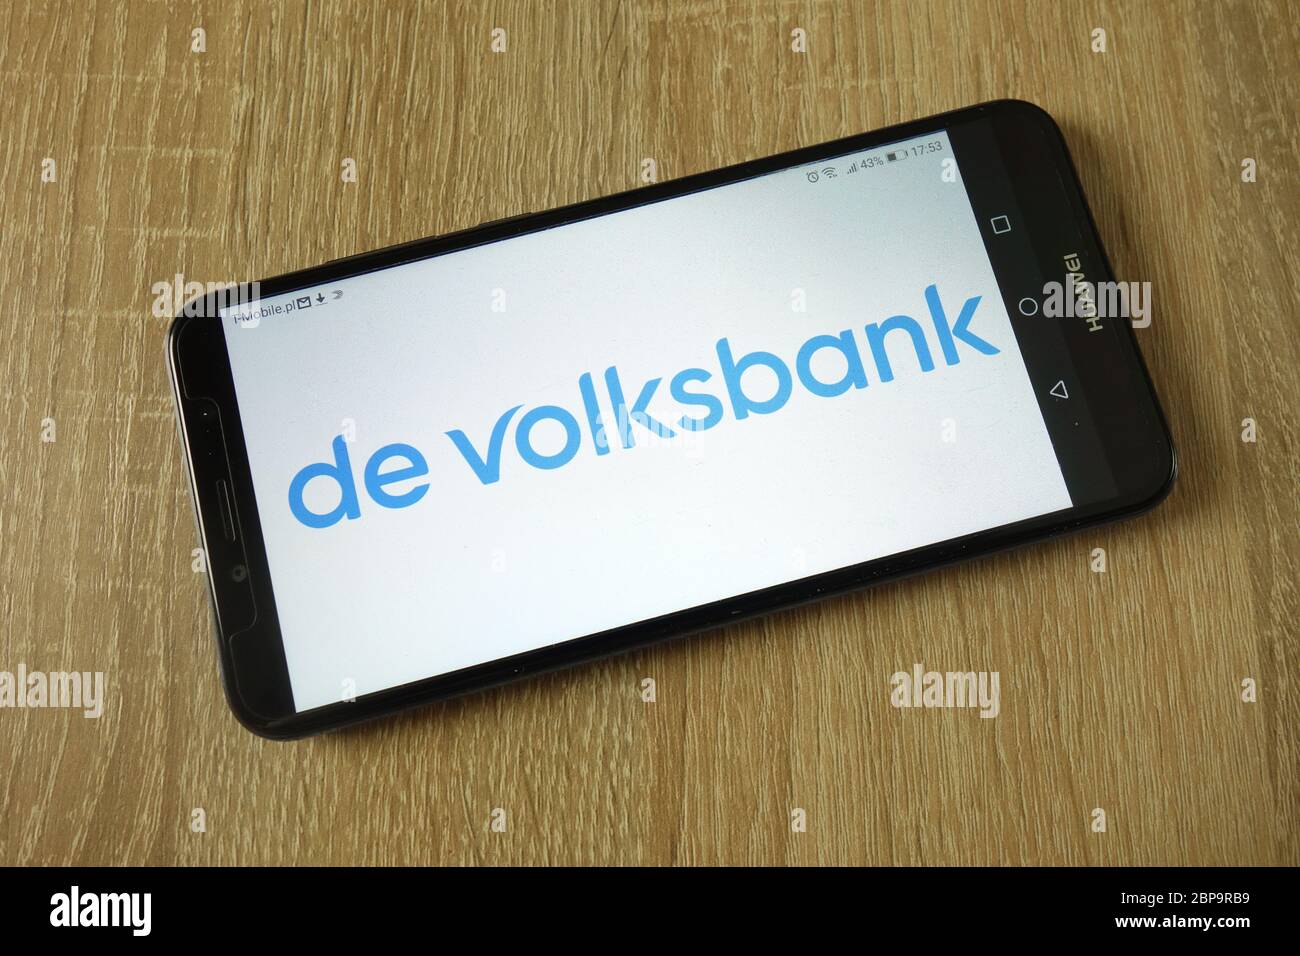 De Volksbank N.V. logo displayed on smartphone Stock Photo